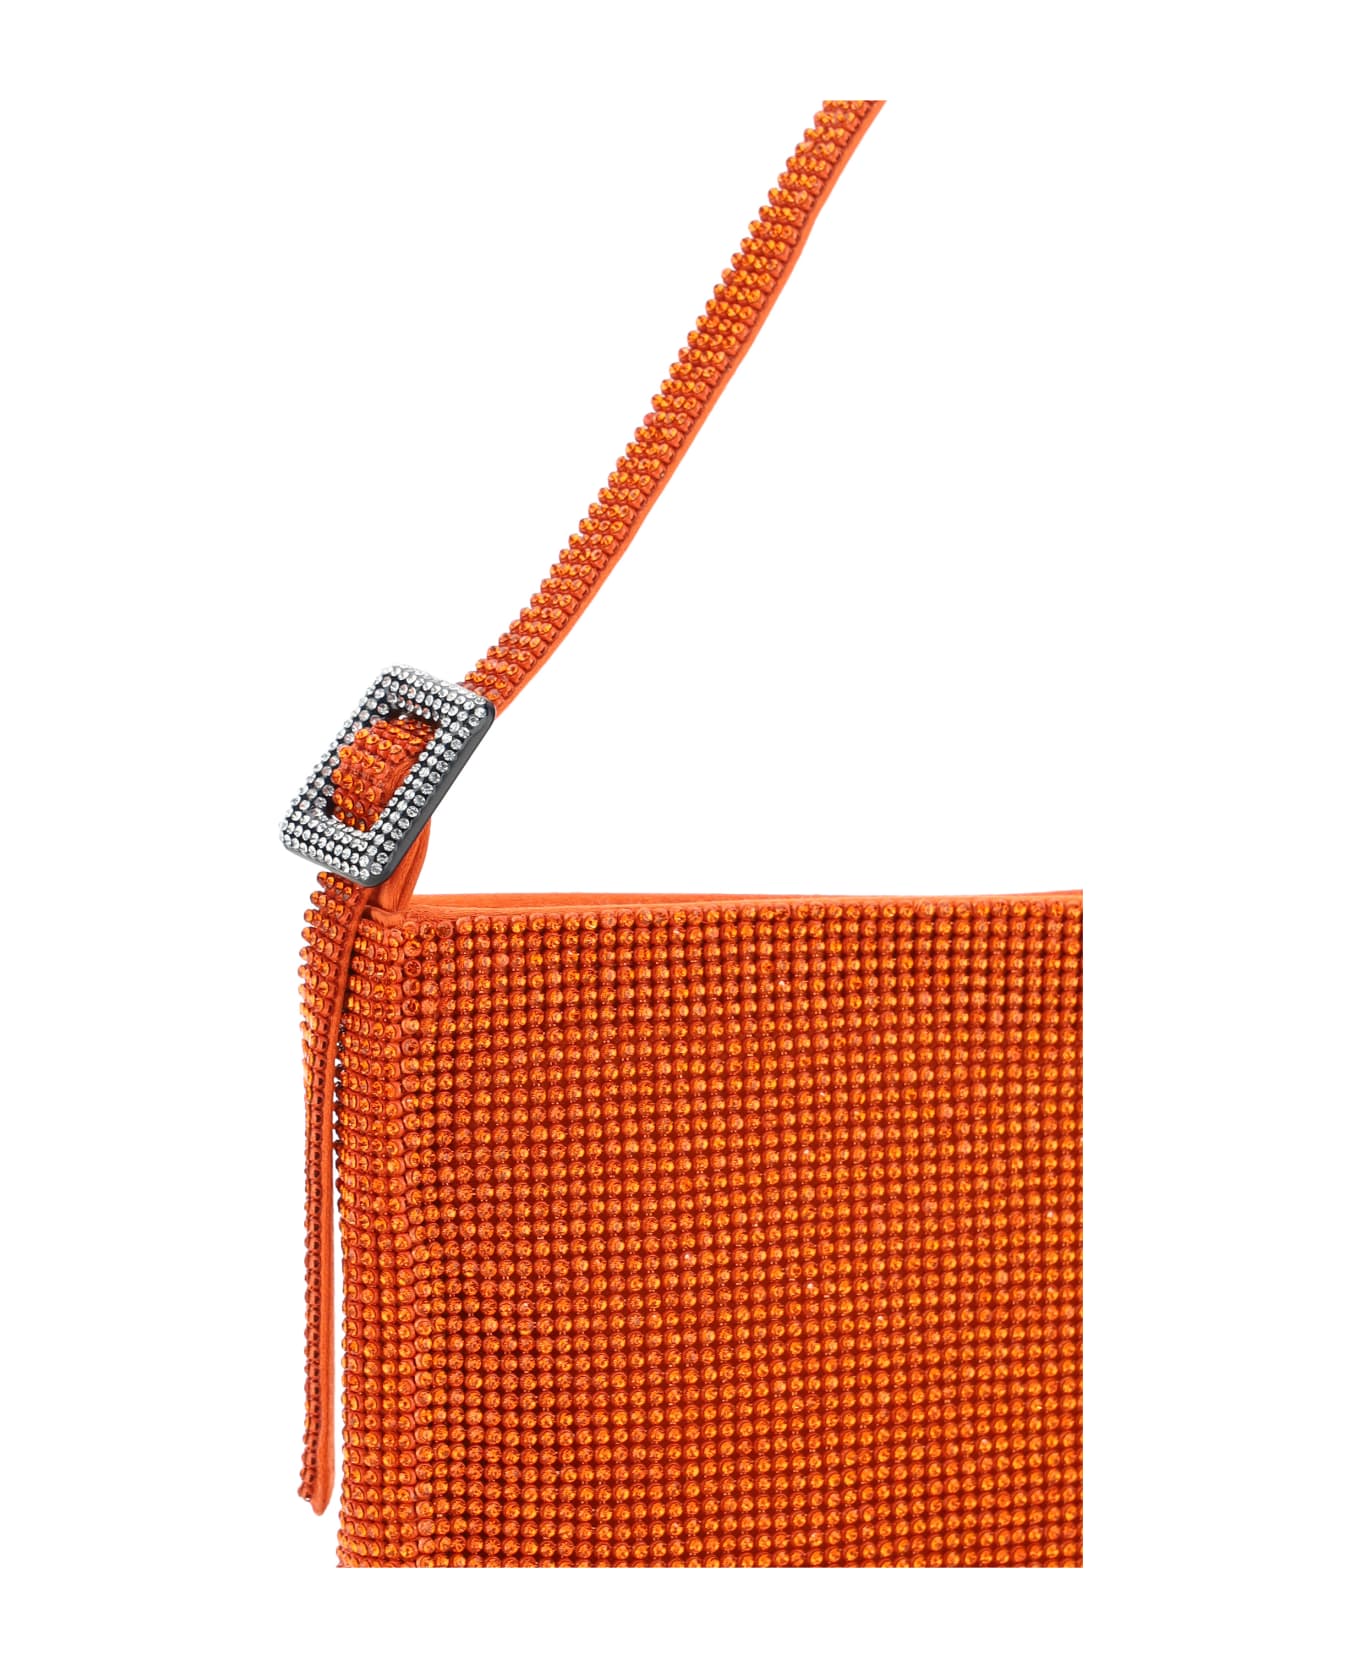 Benedetta Bruzziches Handbag - Orange トートバッグ